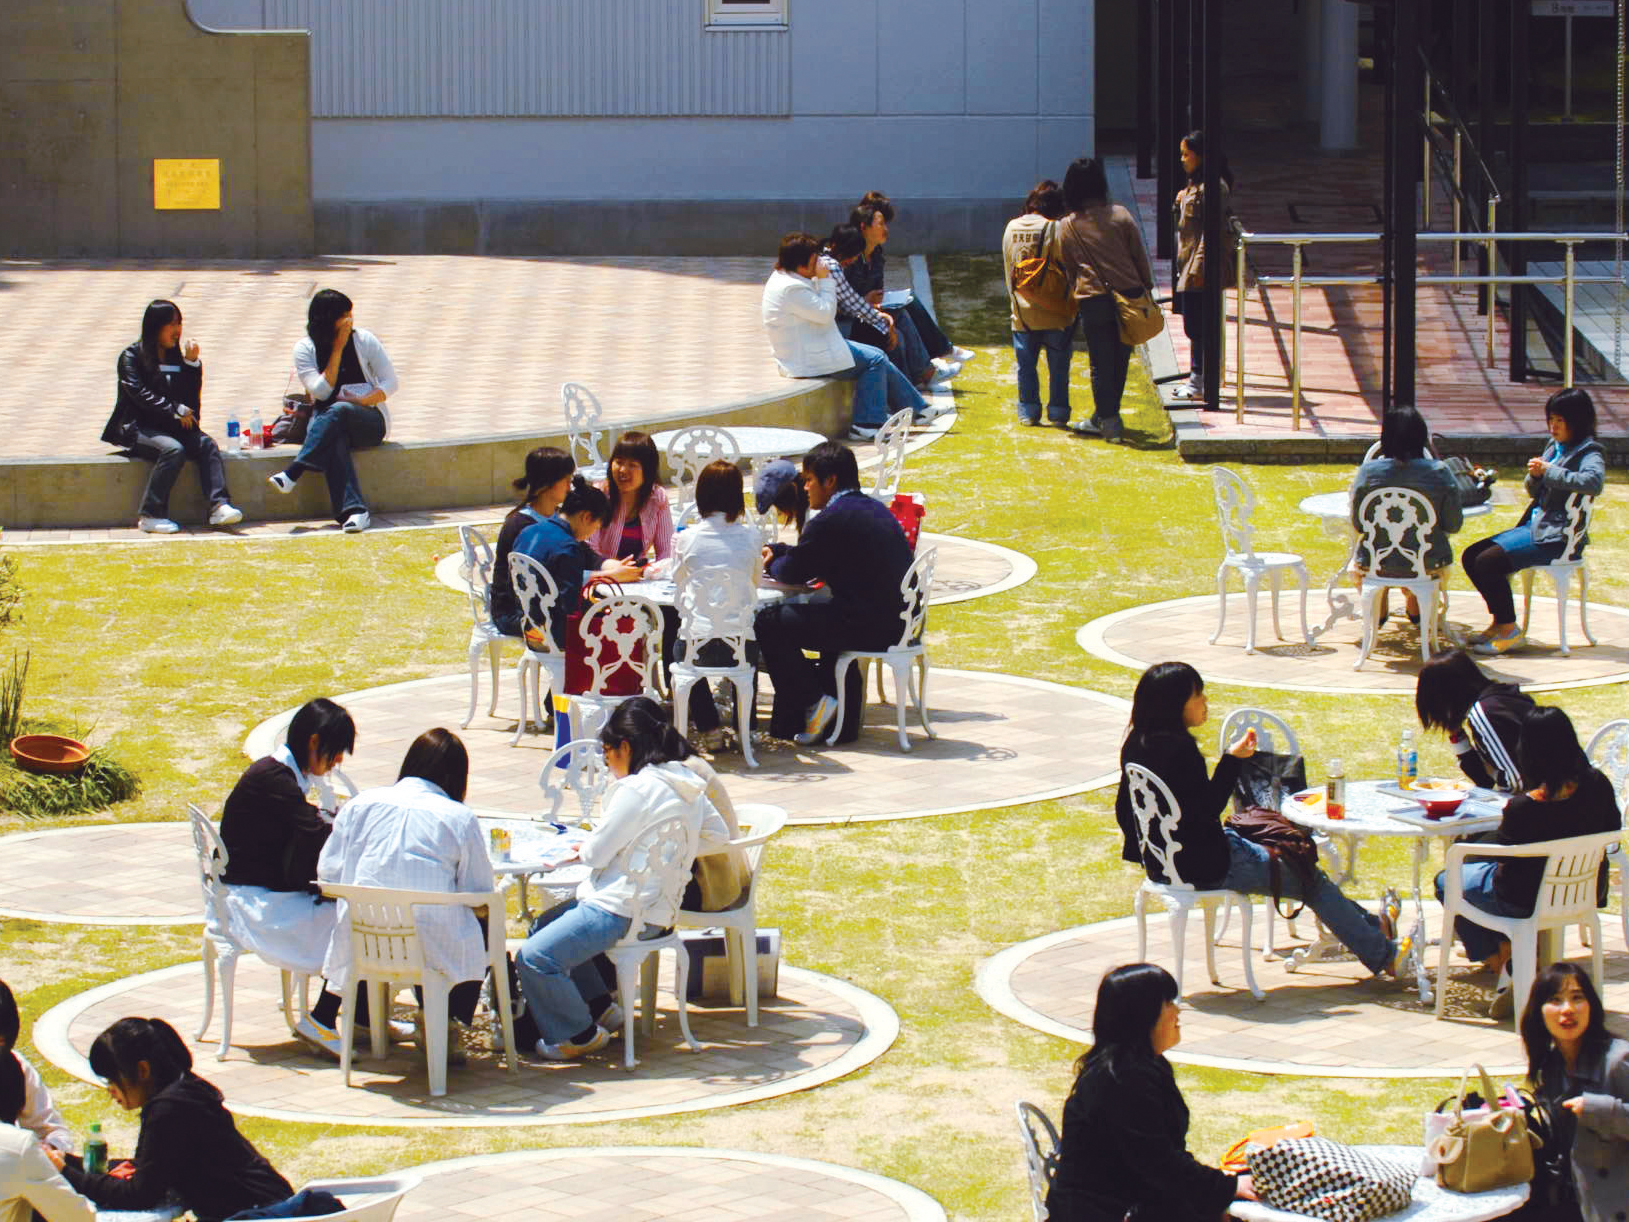 中庭と野外ステージは学生の憩いの場・学習成果の発表の場。